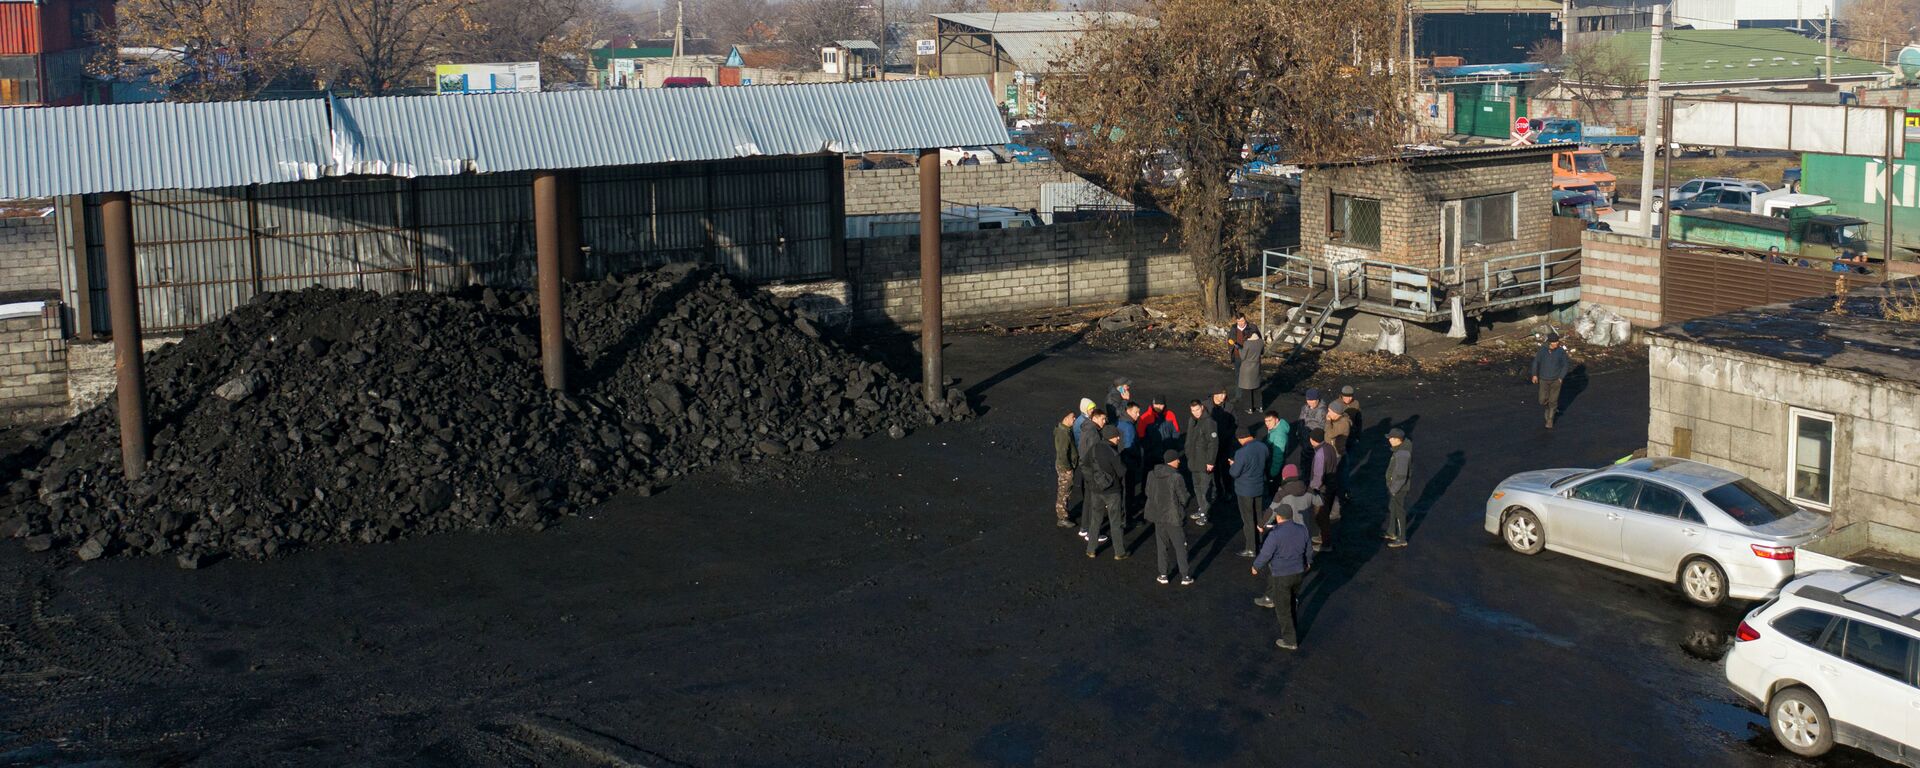 Продажа угля в Бишкеке. Архивное фото - Sputnik Кыргызстан, 1920, 25.10.2022